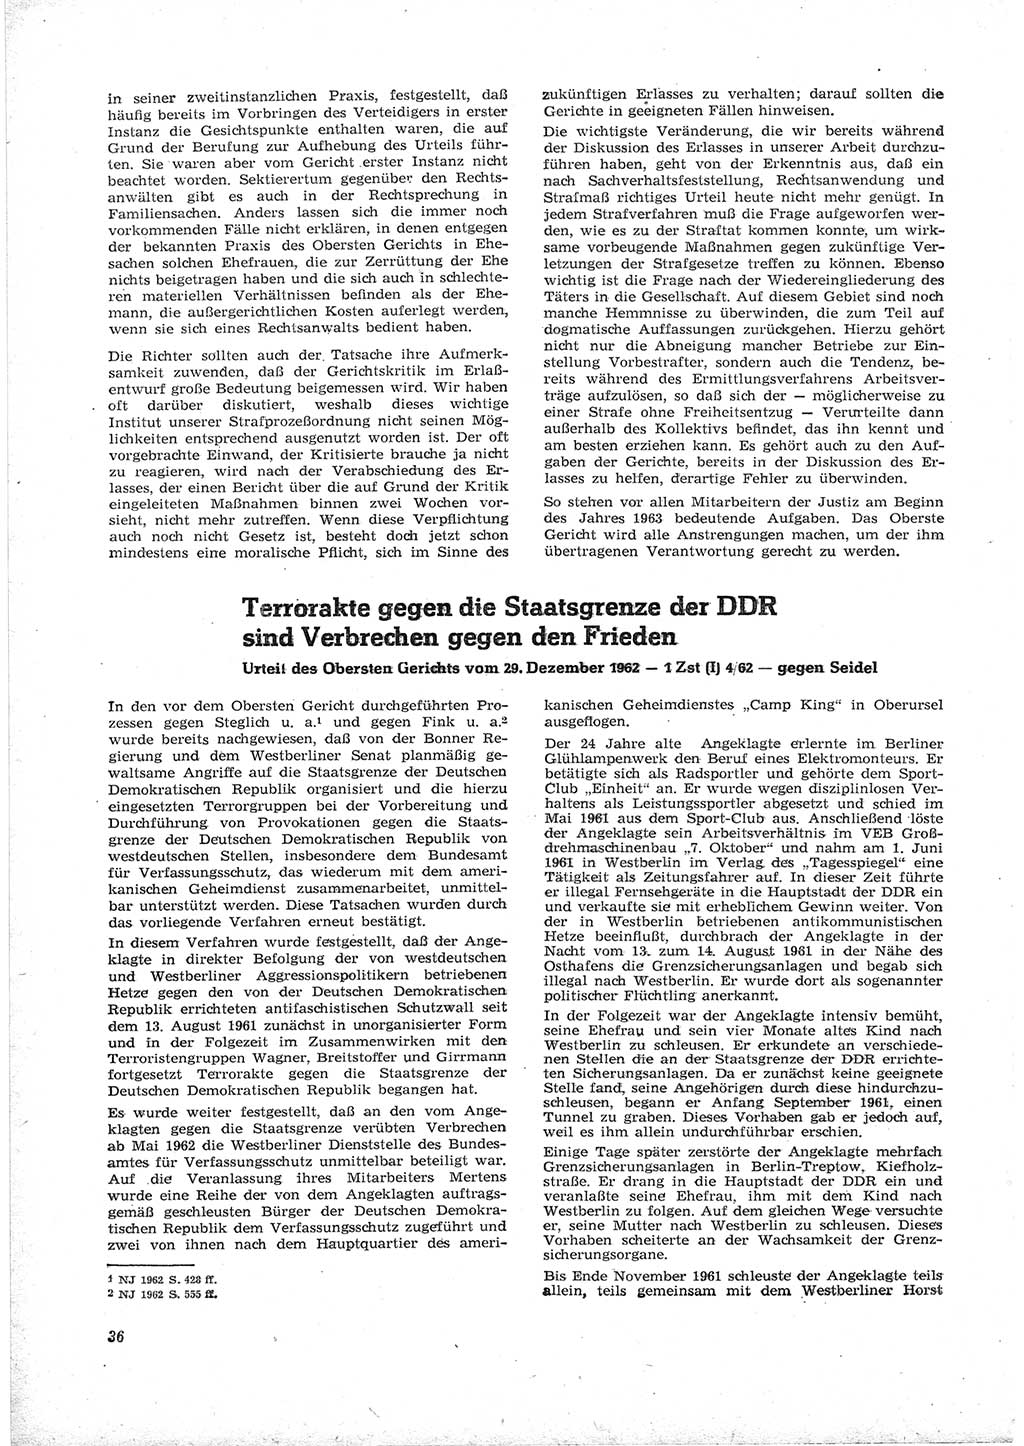 Neue Justiz (NJ), Zeitschrift für Recht und Rechtswissenschaft [Deutsche Demokratische Republik (DDR)], 17. Jahrgang 1963, Seite 36 (NJ DDR 1963, S. 36)